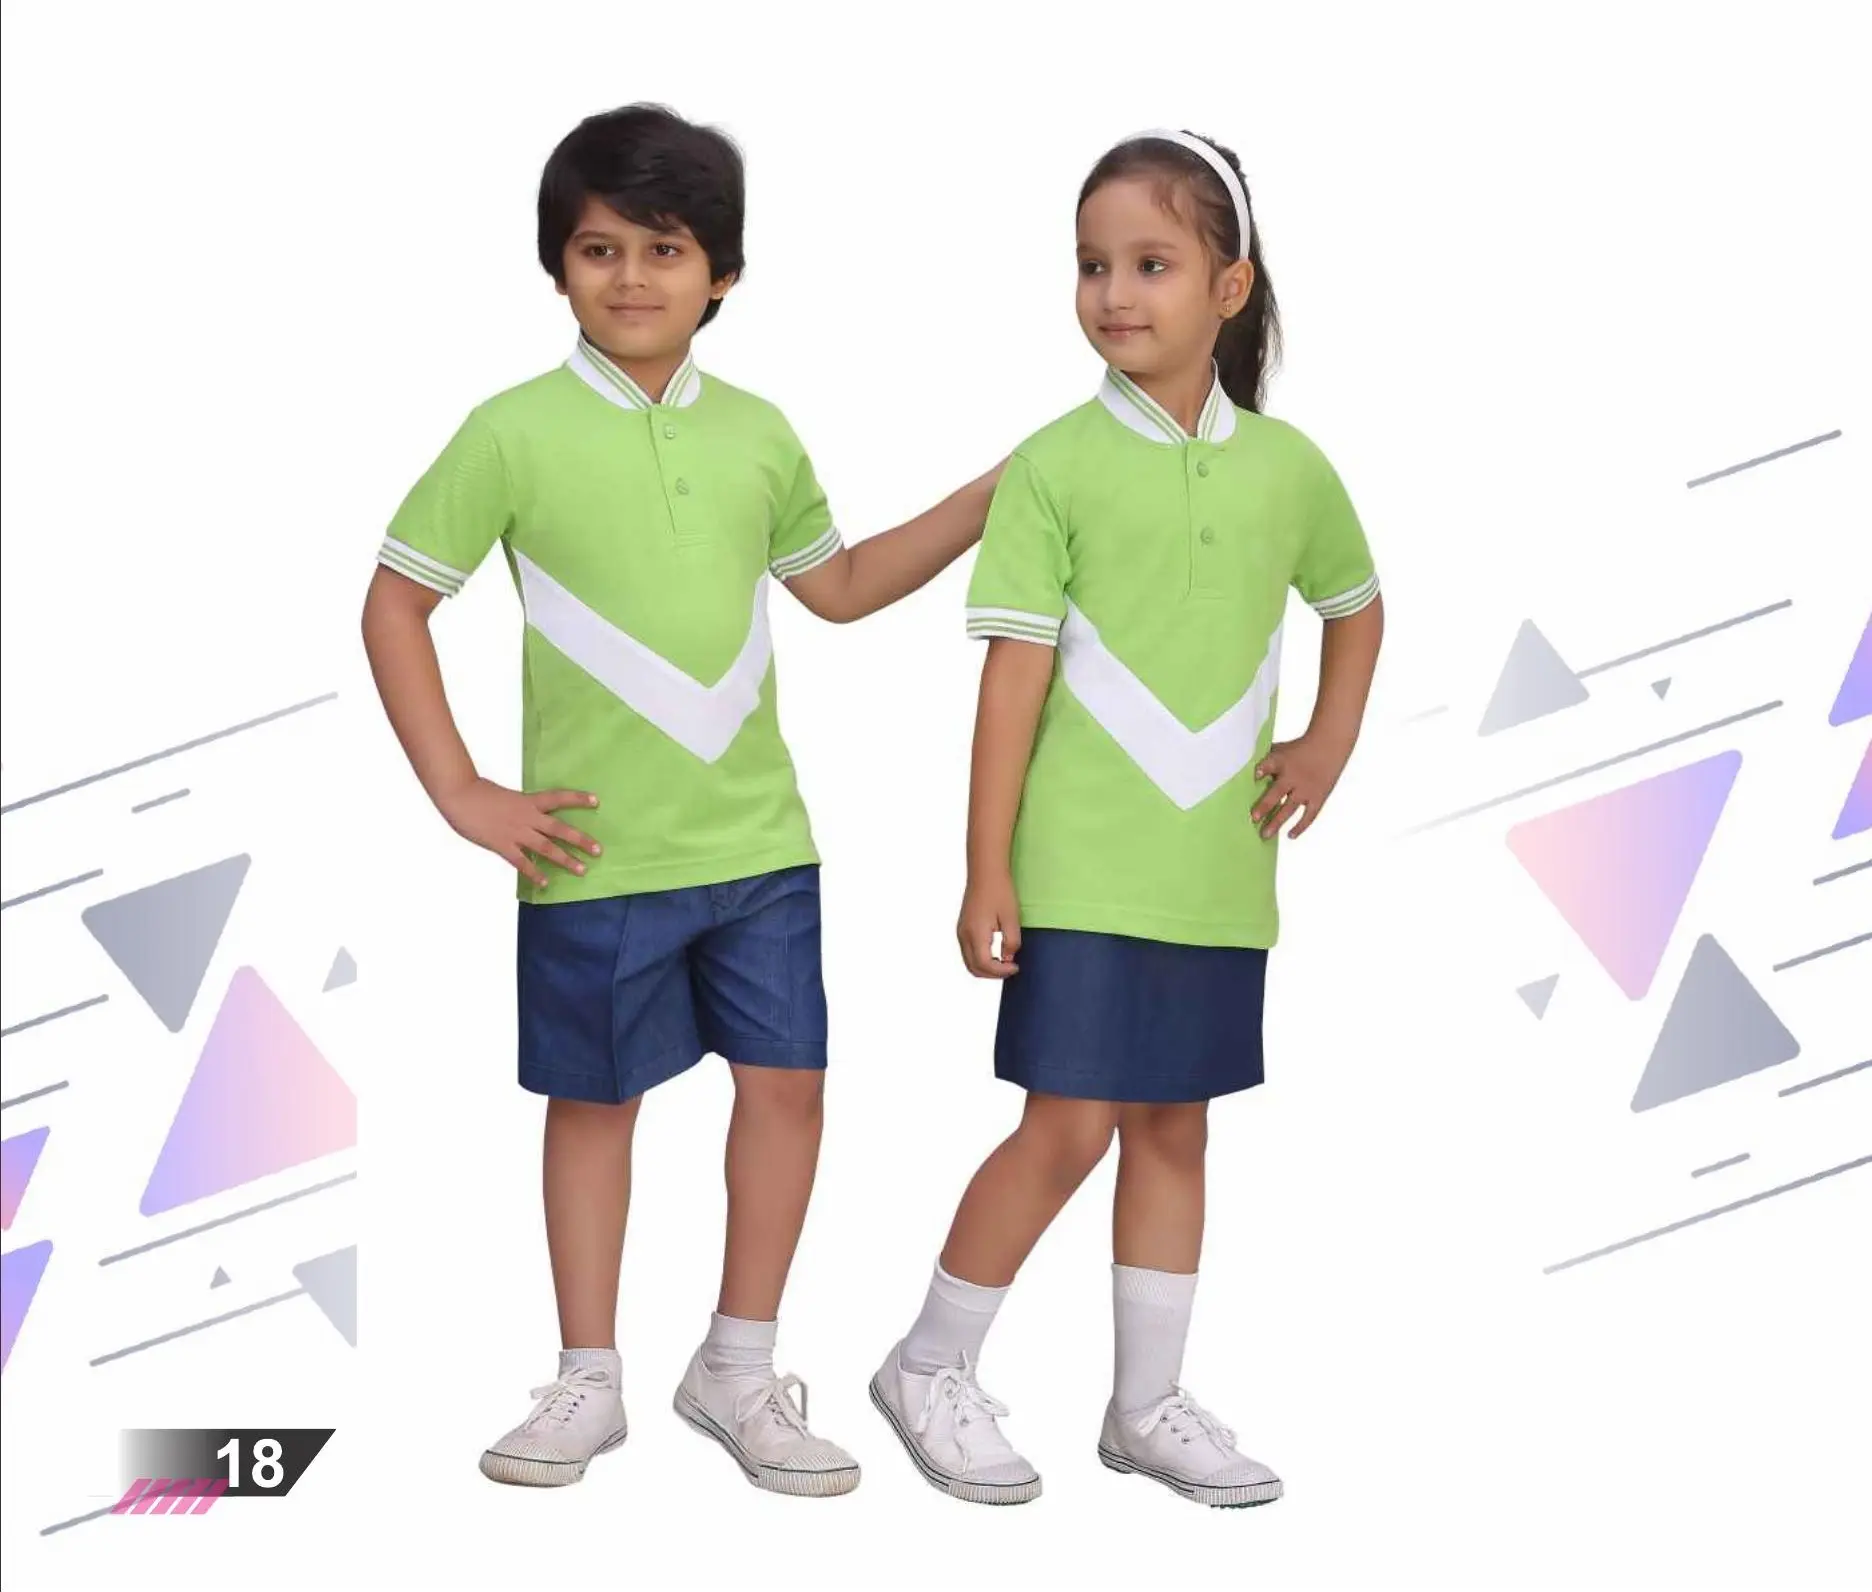 Neueste Design Kinder Kleidung Sport tragen Fußball Trikot Custom ized Pattern Fußball uniform für Mädchen & Jungen